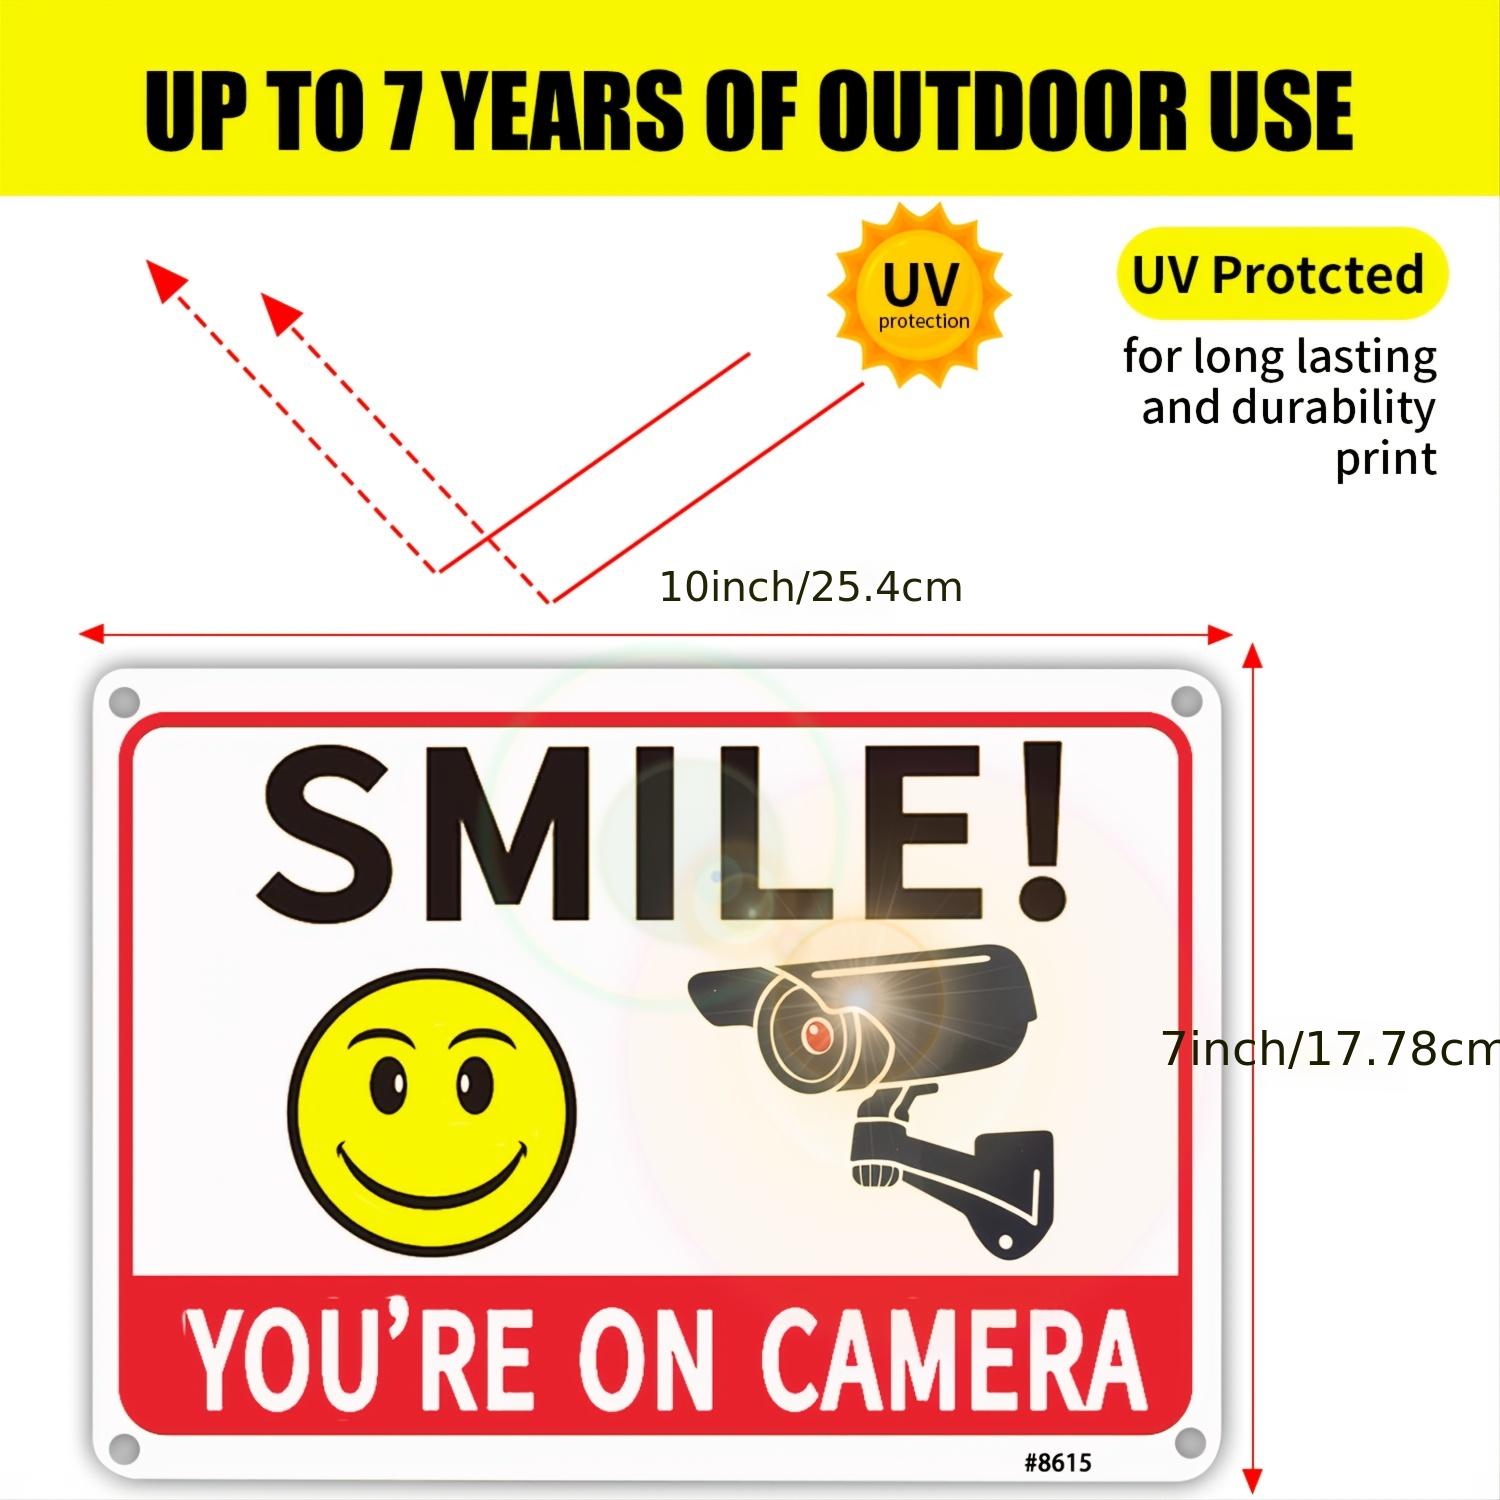 Pack de 2 carteles de videovigilancia CCTV